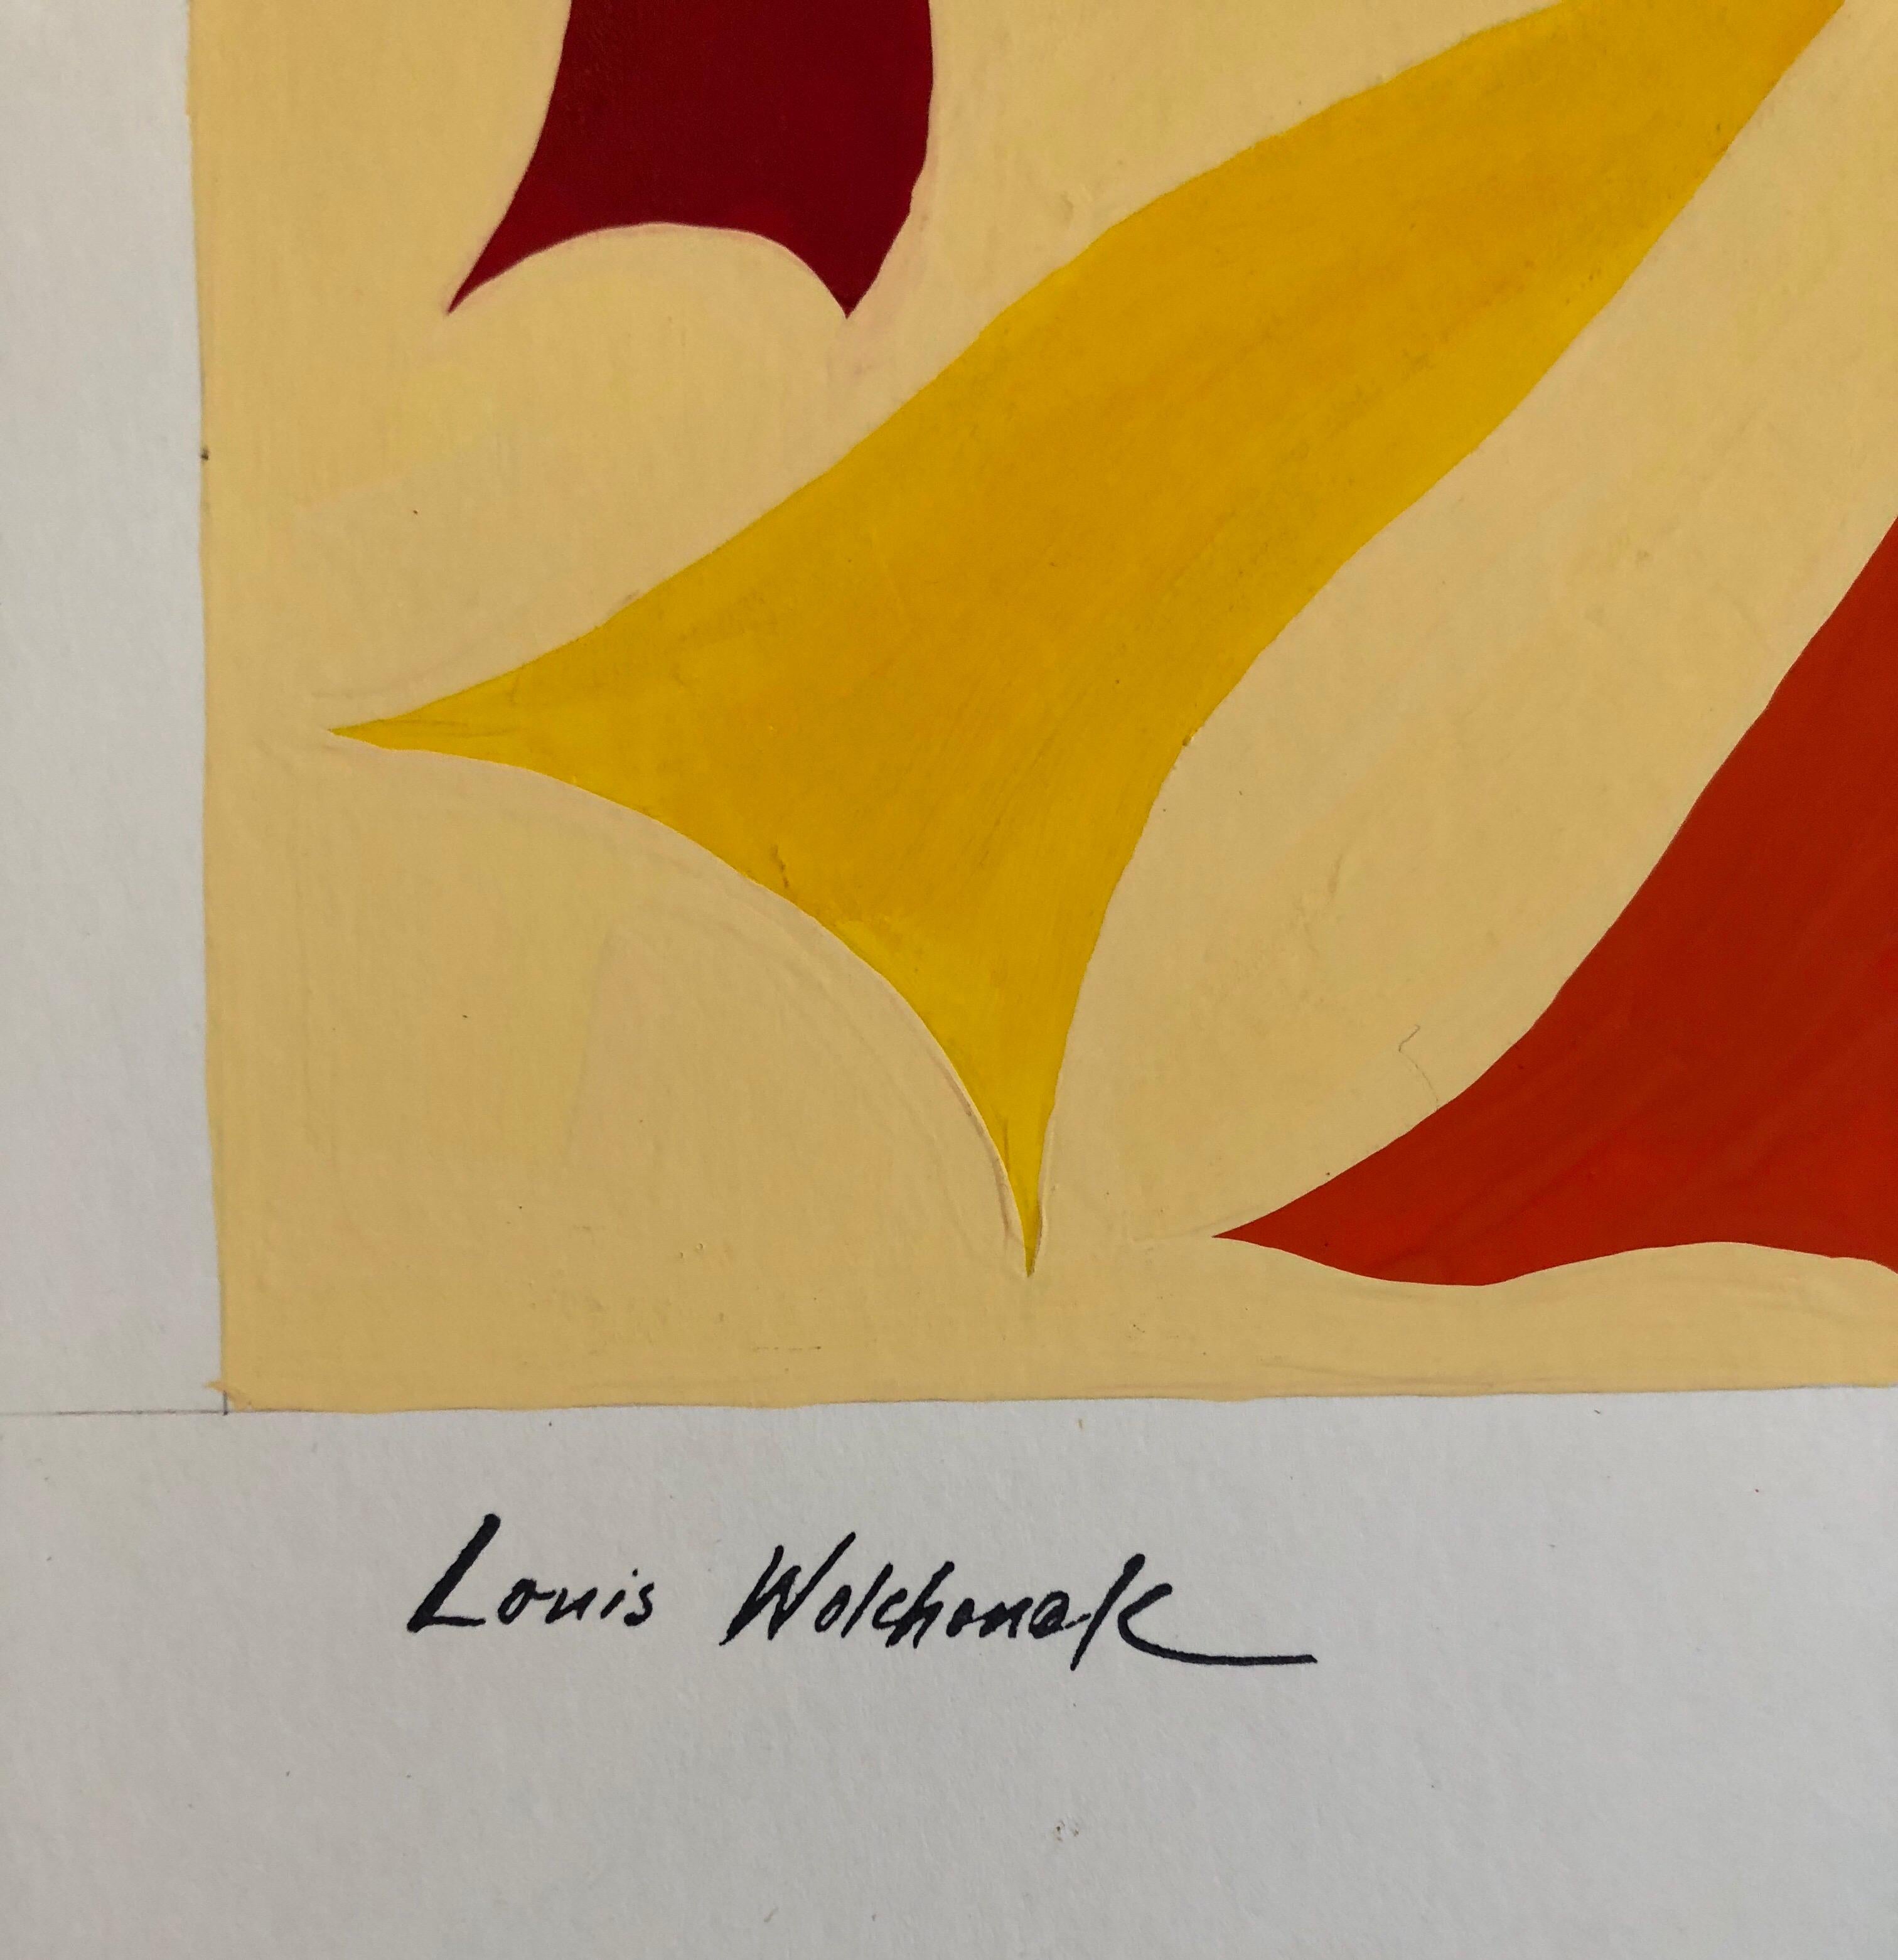 Abstrakt-expressionistisches Farb Gouache-Gemälde, Mid-Century Mod WPA, jüdischer Künstler – Painting von Louis Wolchonok